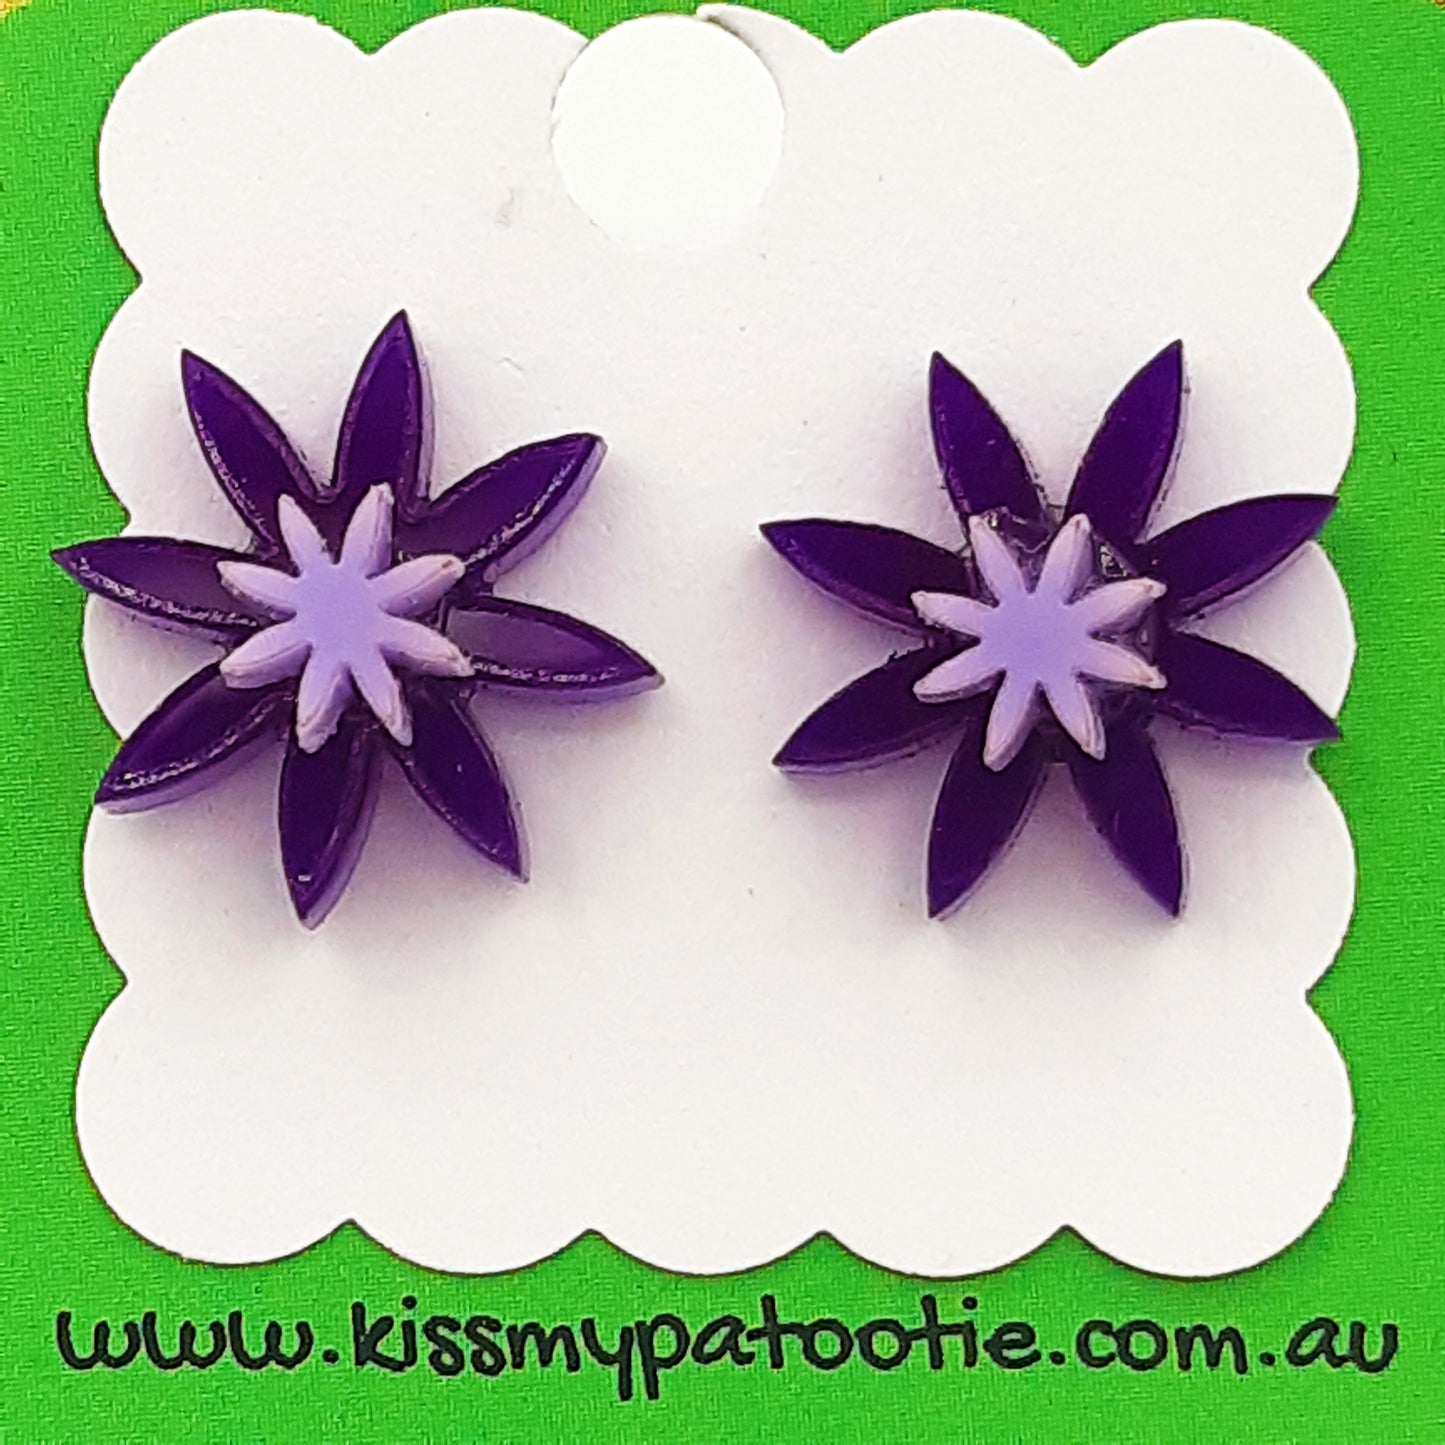 Flower laser cut acrylic earrings - daisy - purple